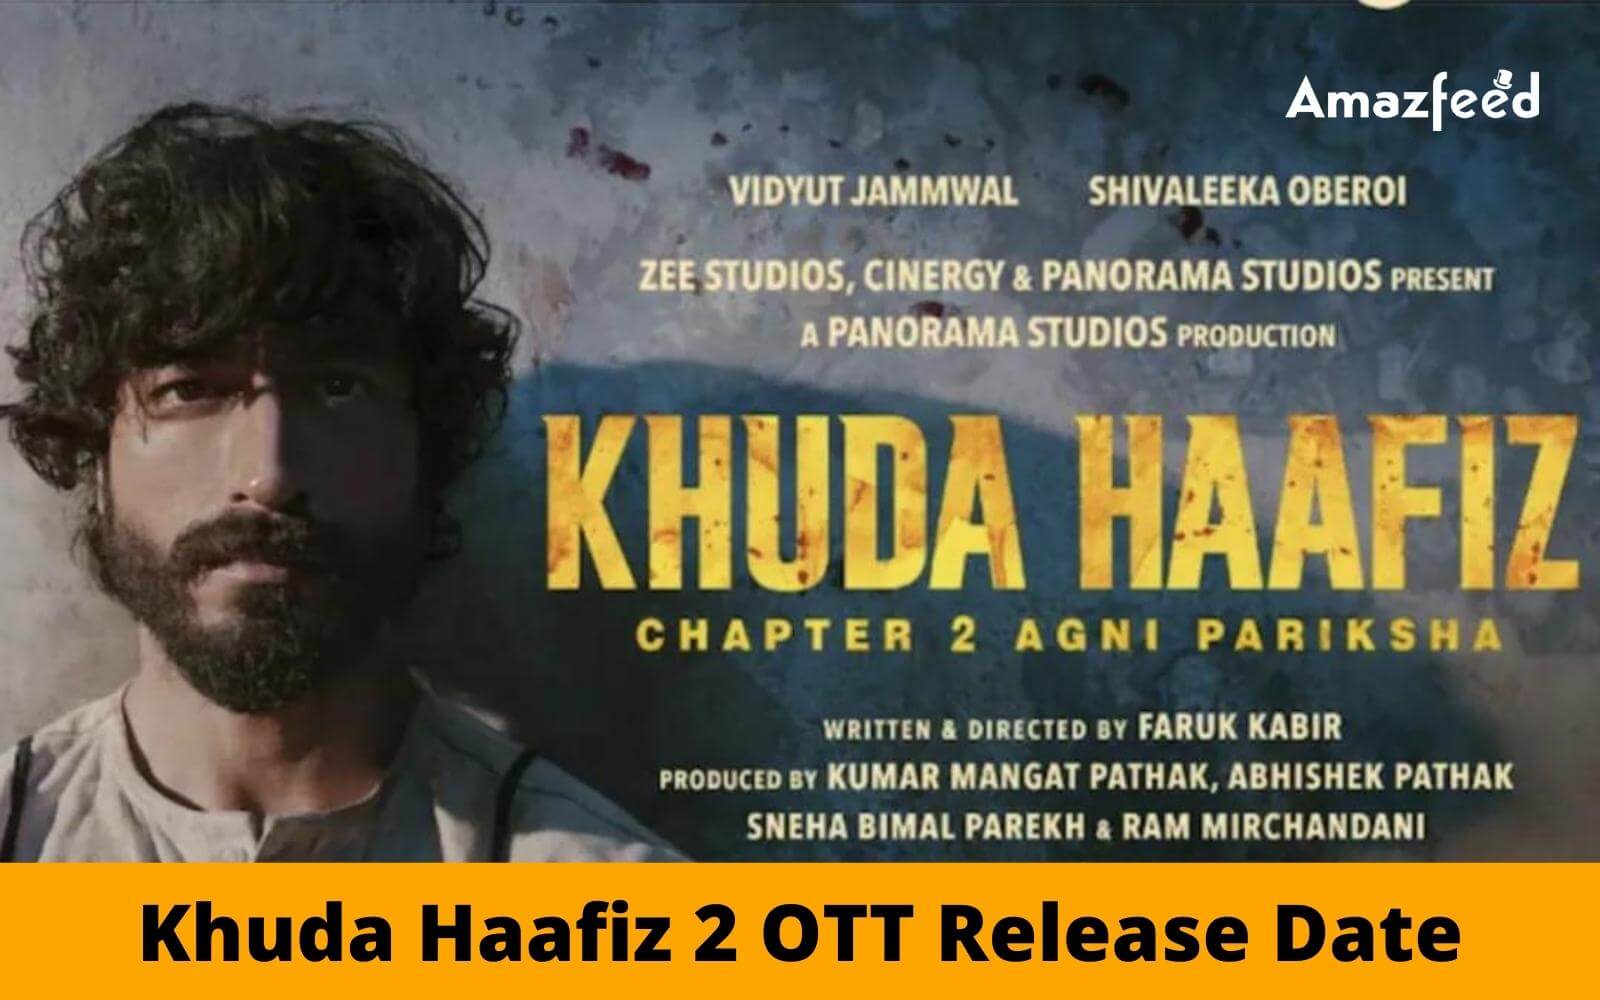 Khuda Haafiz 2 OTT Release Date | Amazon Prime, Netflix, Zee5, Hotstar, SonyLIV